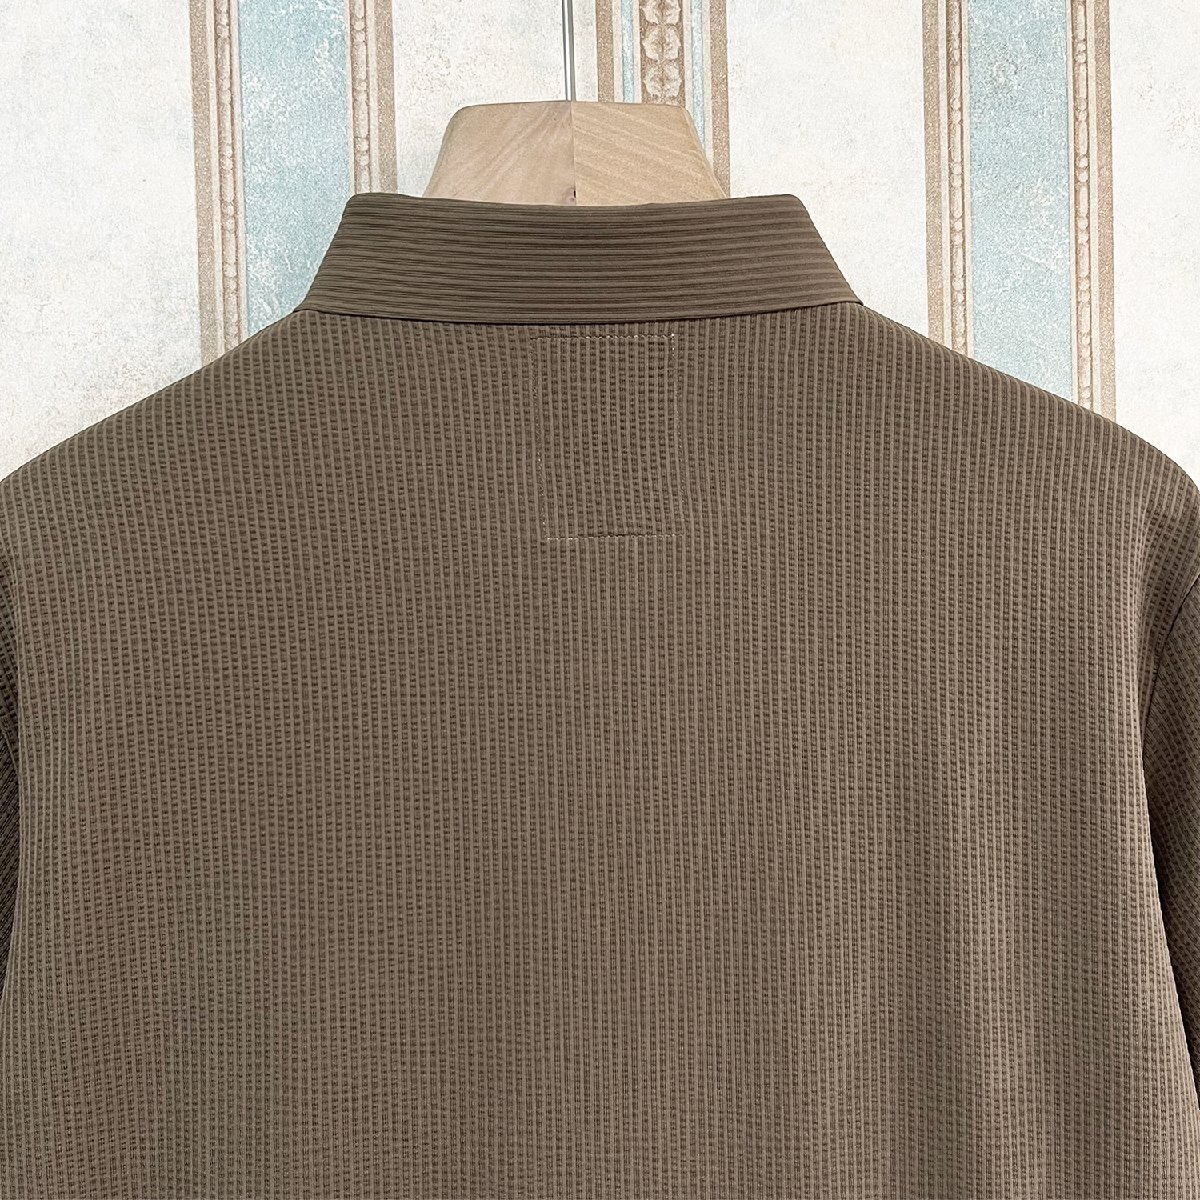 最高級 定価3万 FRANKLIN MUSK・アメリカ・ニューヨーク発 ポロシャツ 高品質シルク/コットン混 薄手 速乾 涼しい 洗練 ビジネス サイズ3_画像4